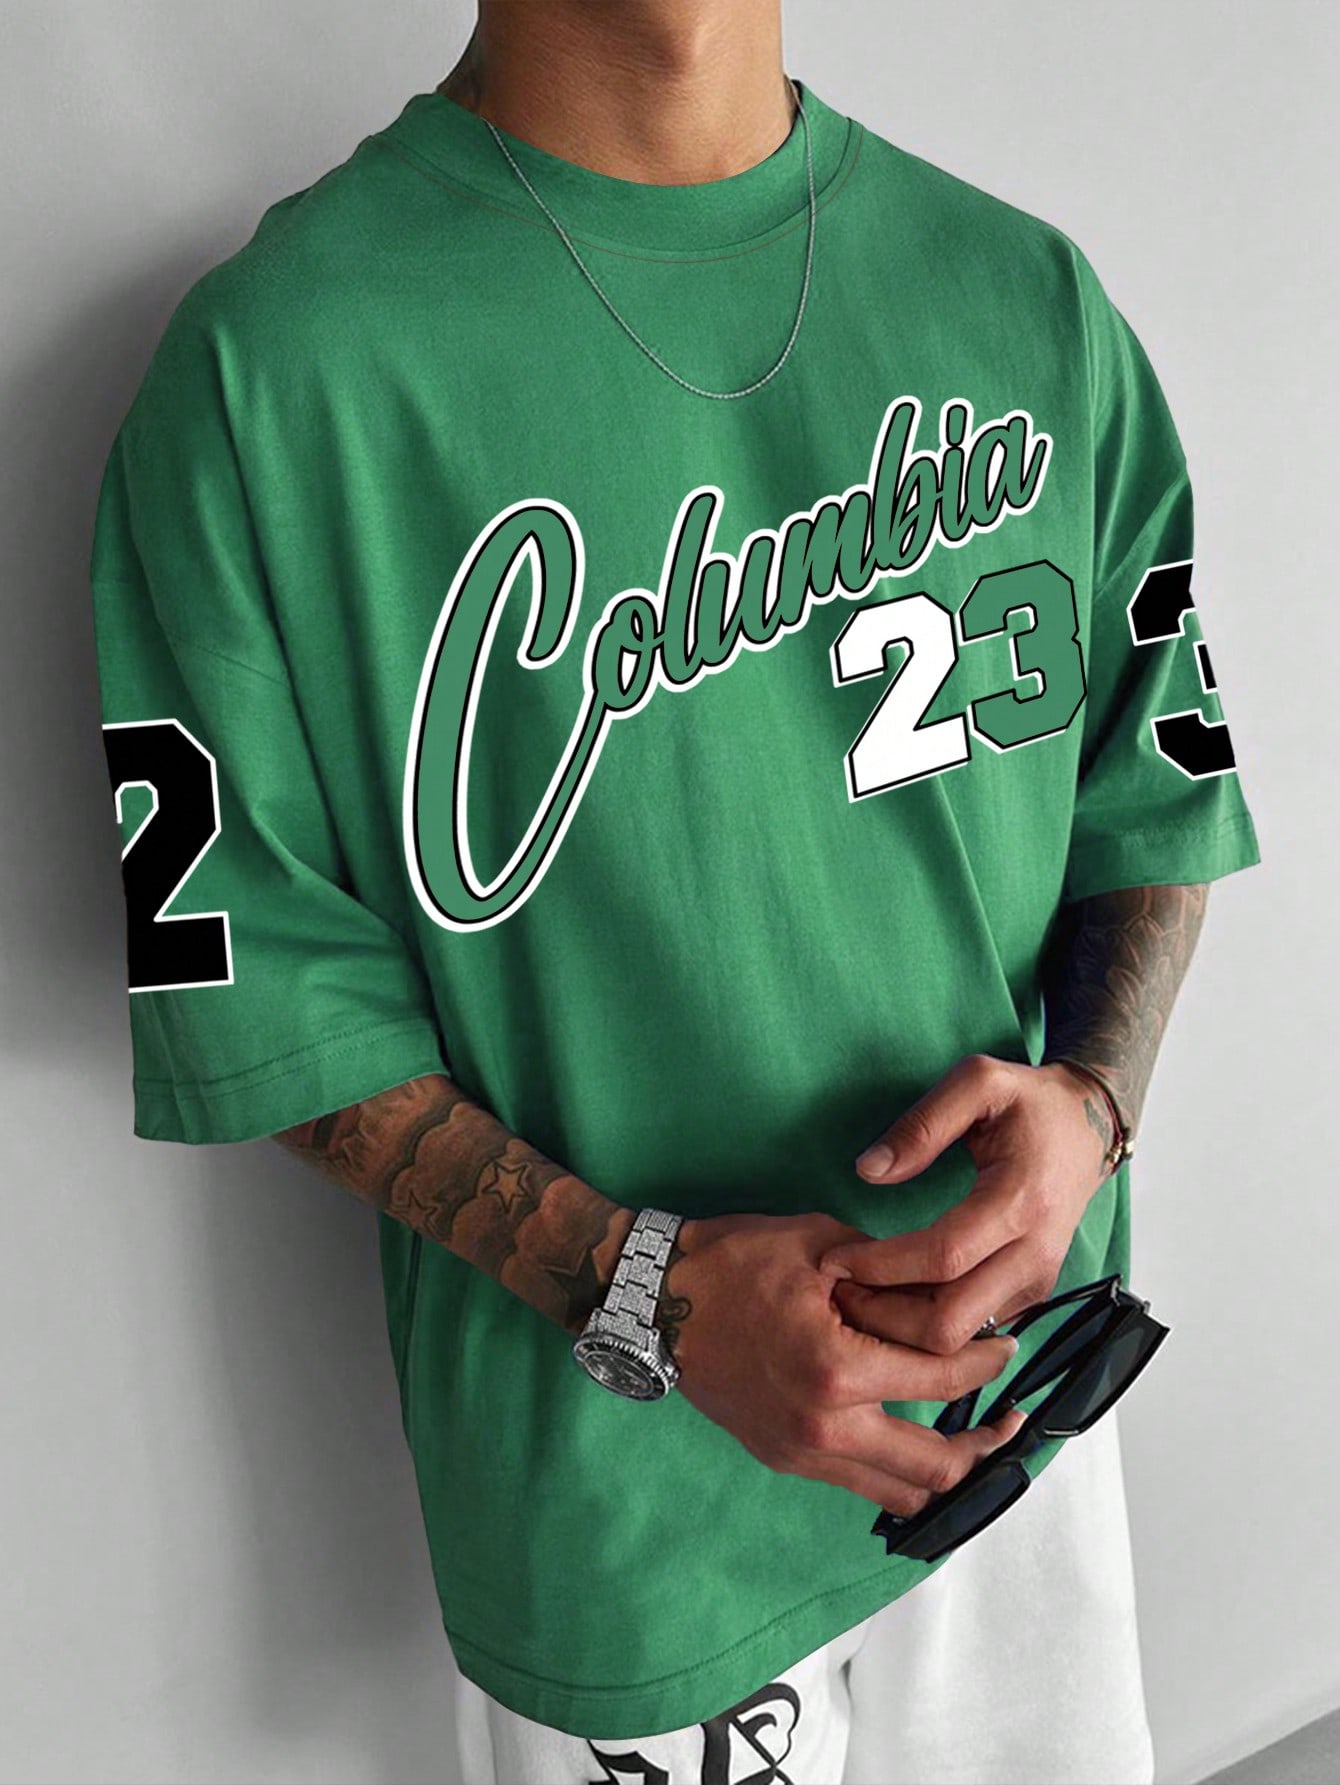 Мужская футболка большого размера с заниженными плечами и короткими рукавами Manfinity Sporsity с буквенным принтом, зеленый